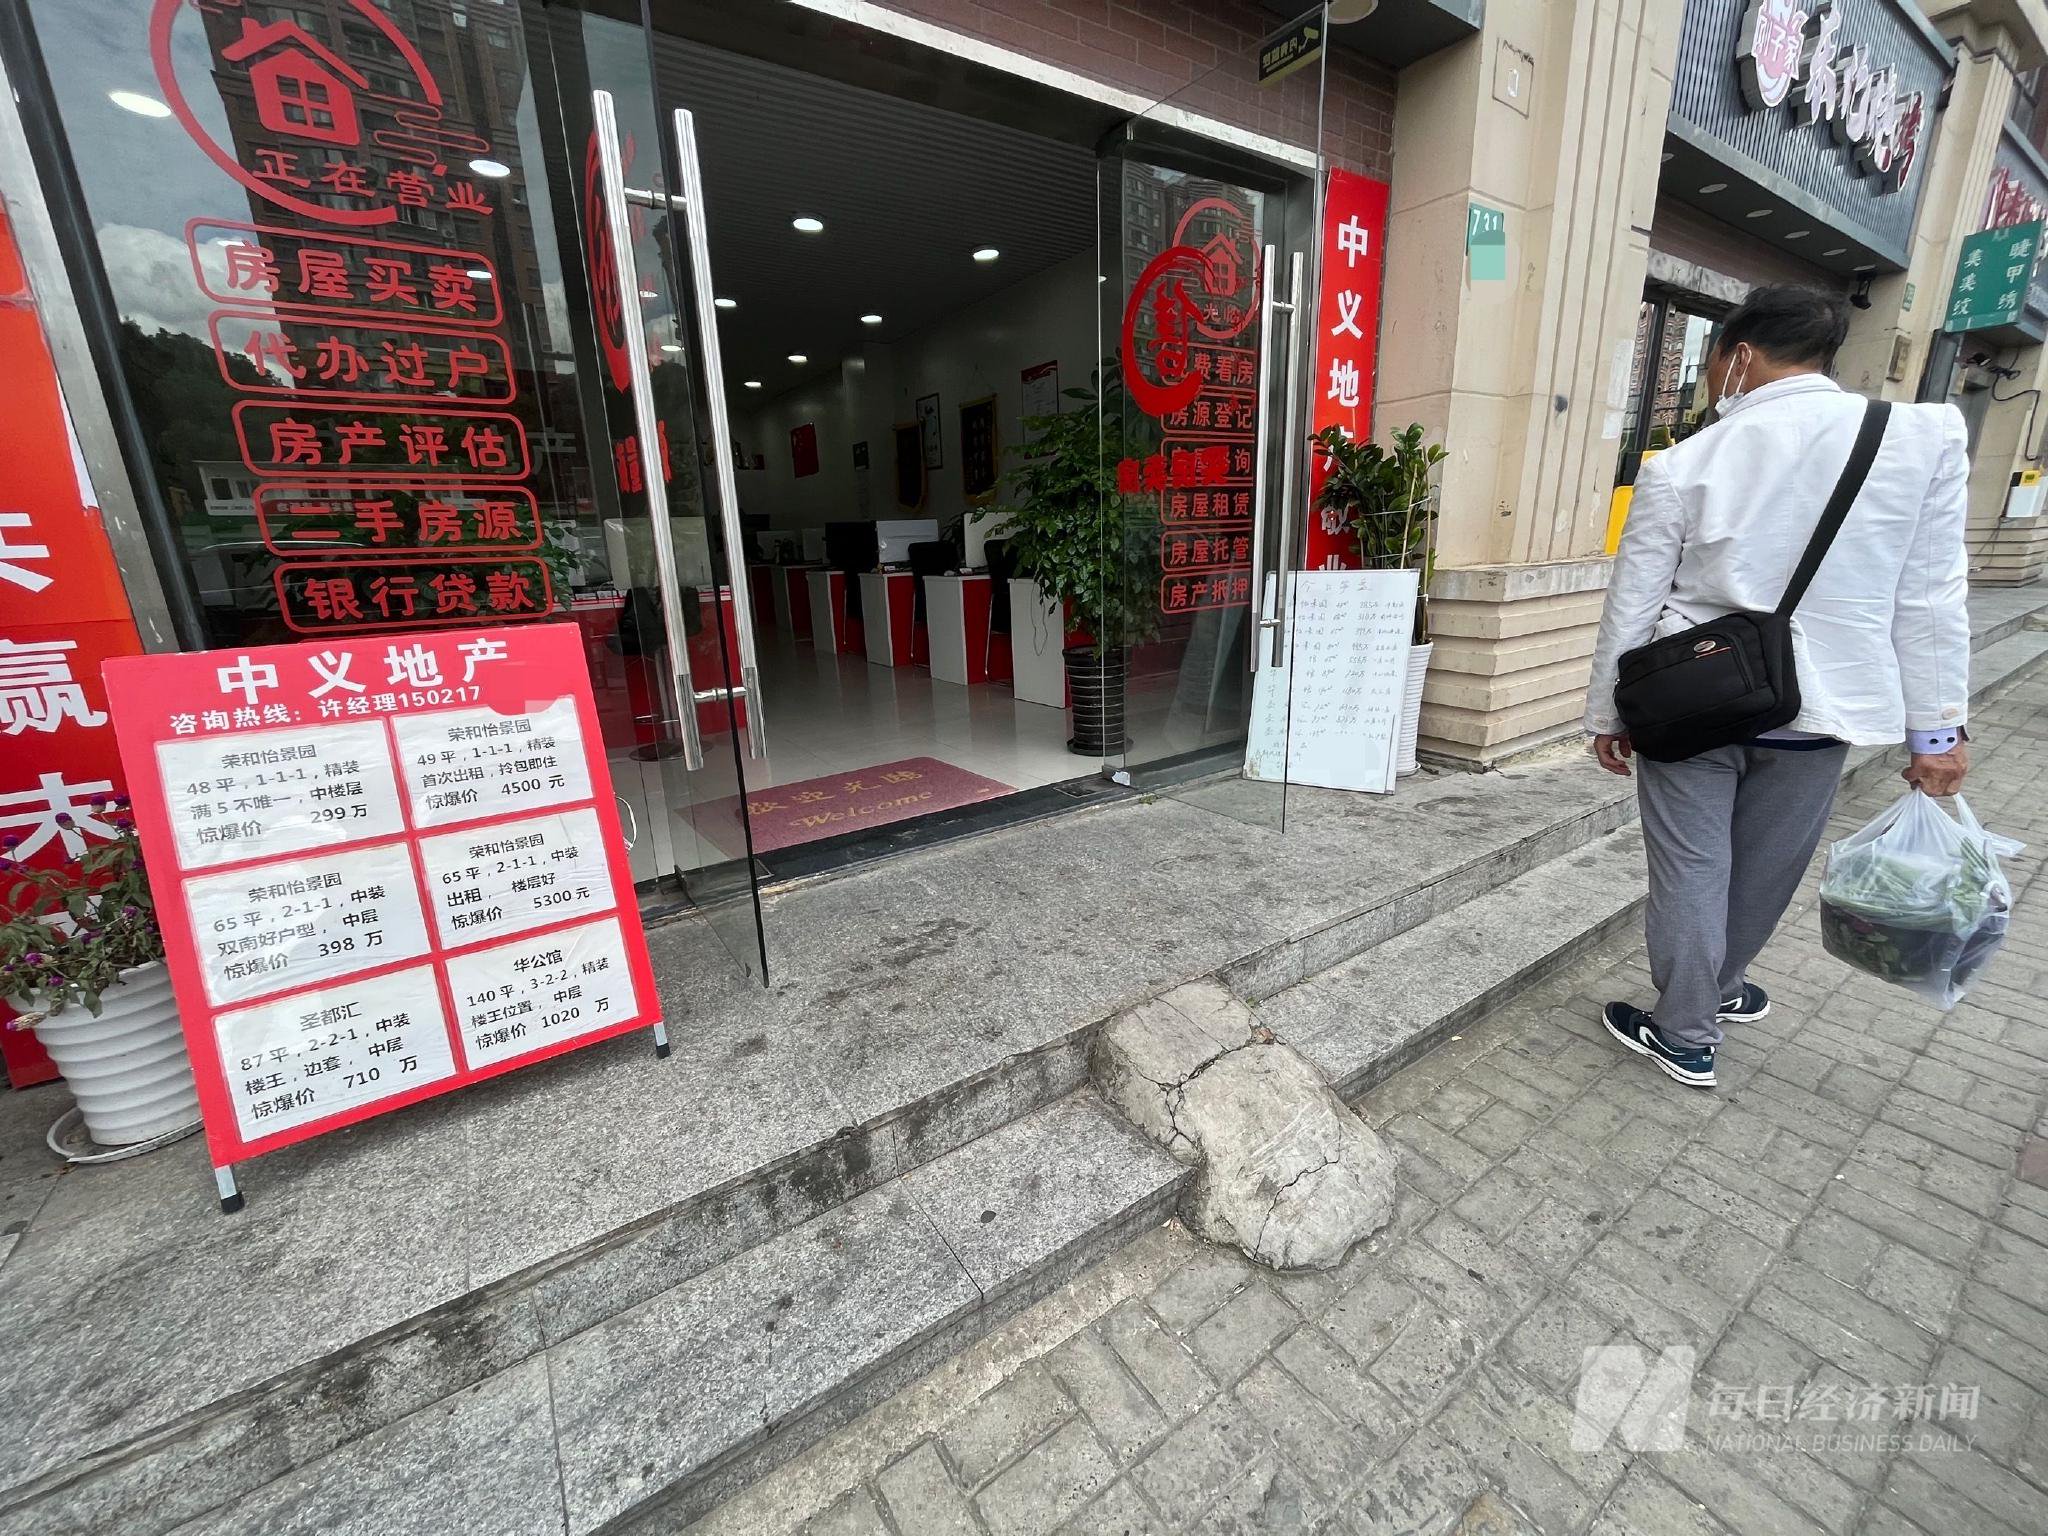 上海某中介门店挂牌信息 每经记者 刘颂辉 摄